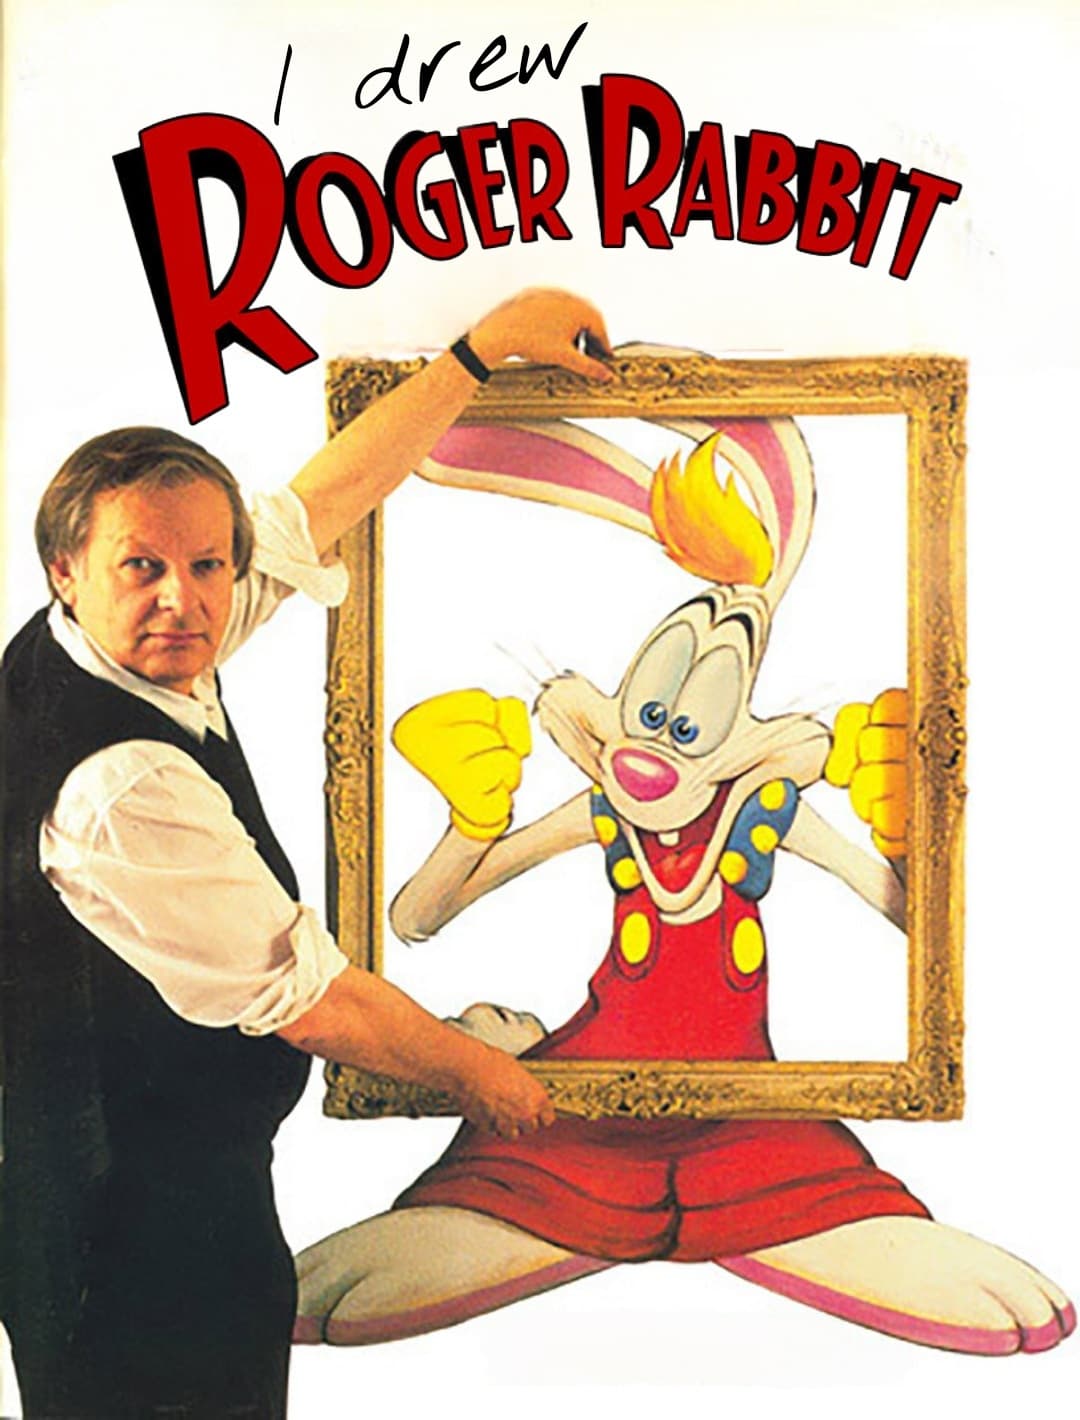 I Drew Roger Rabbit